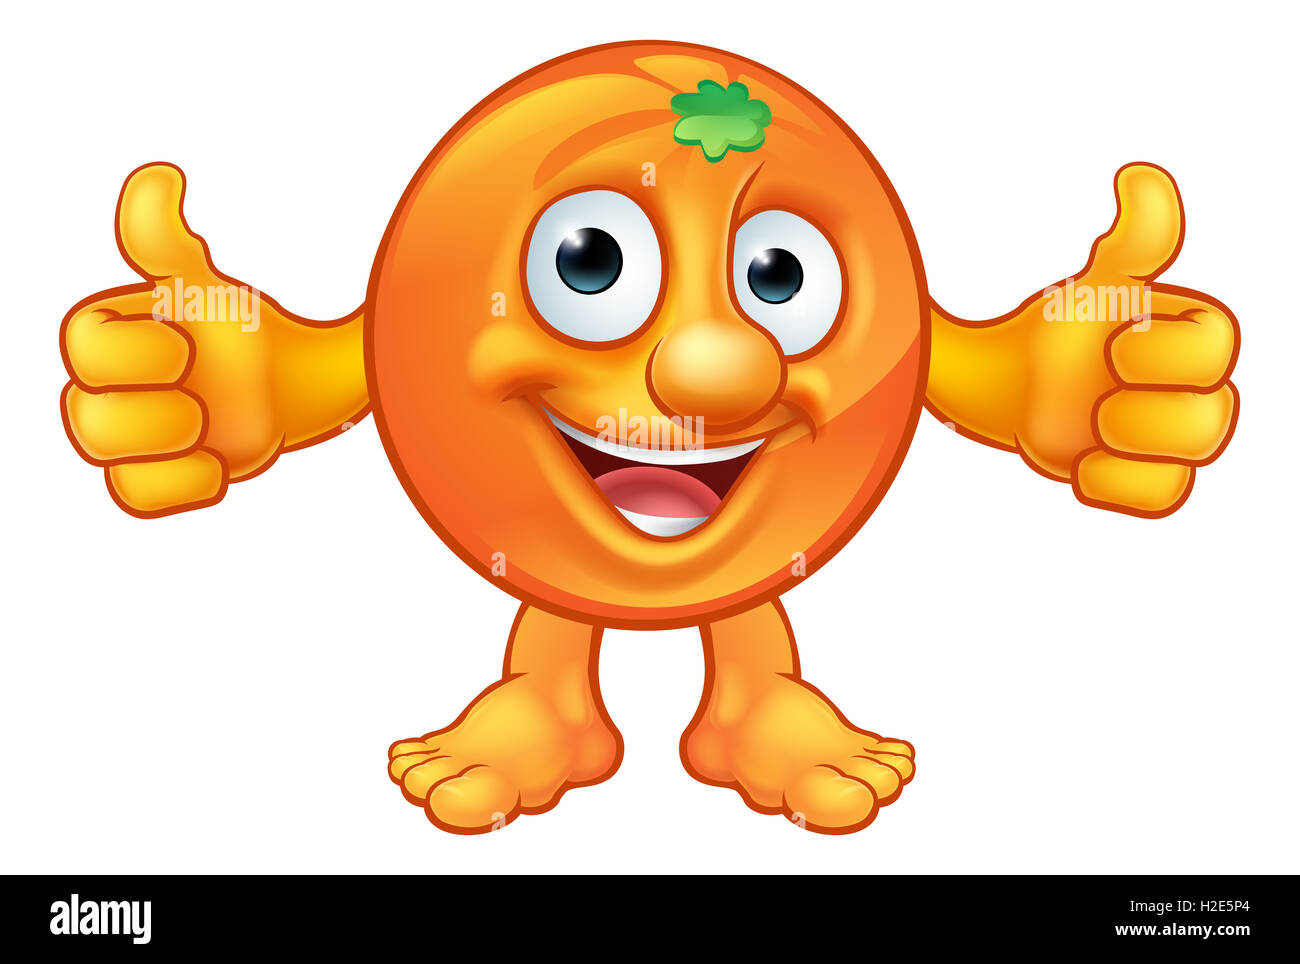 animated orange fruit